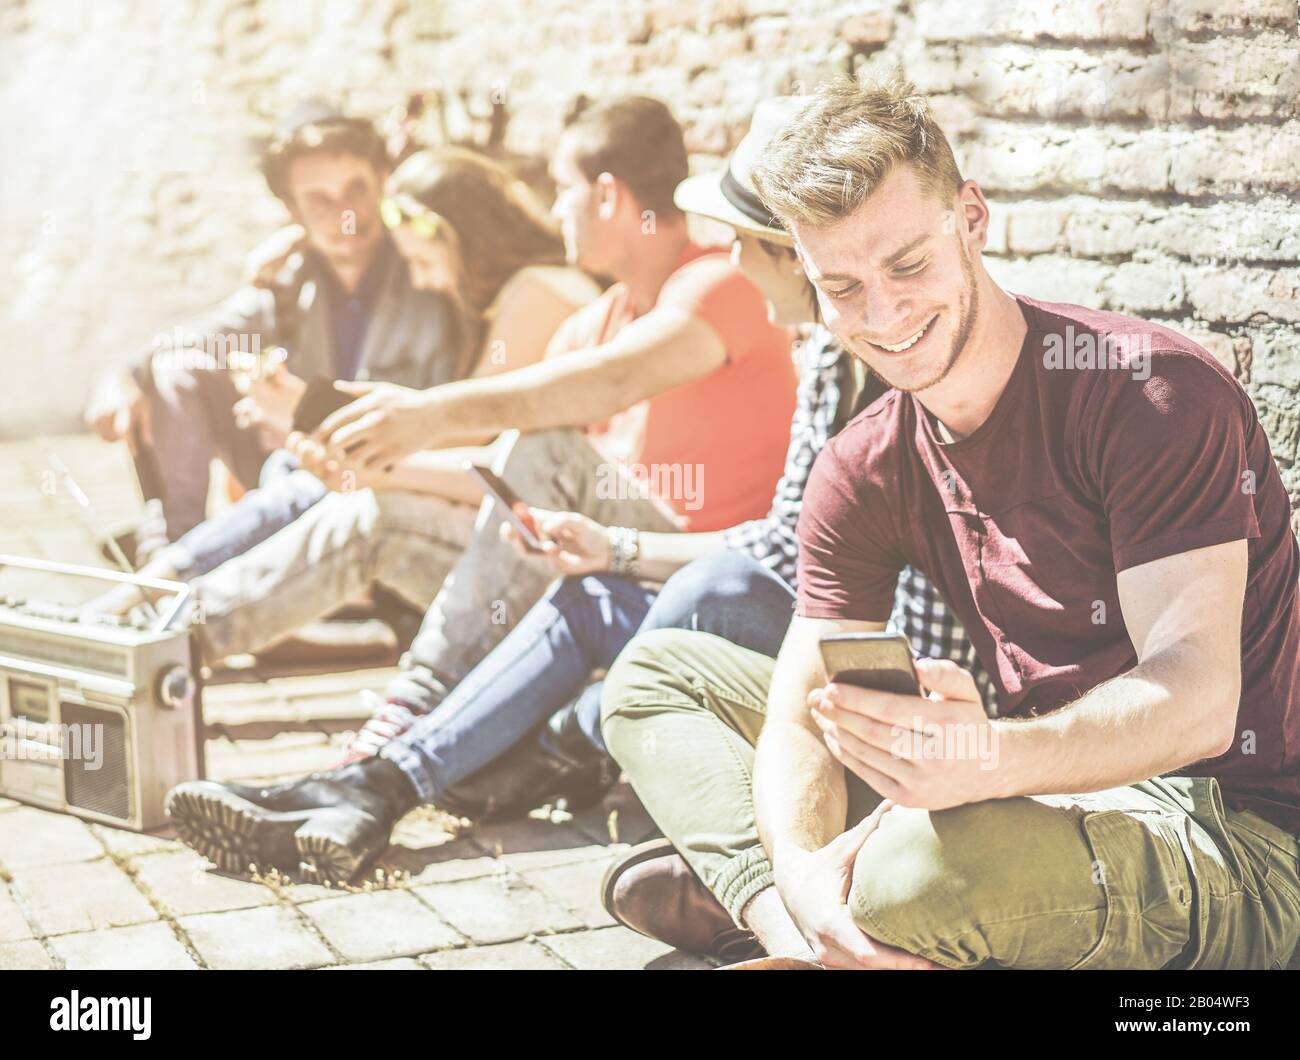 Eine Gruppe von Teenager-Freunden, die mit Mobiltelefonen im Freien in der Altstadt unterwegs sind - Junge Leute im sozialen Moment, die Musik hören und lachen - Focu Stockfoto